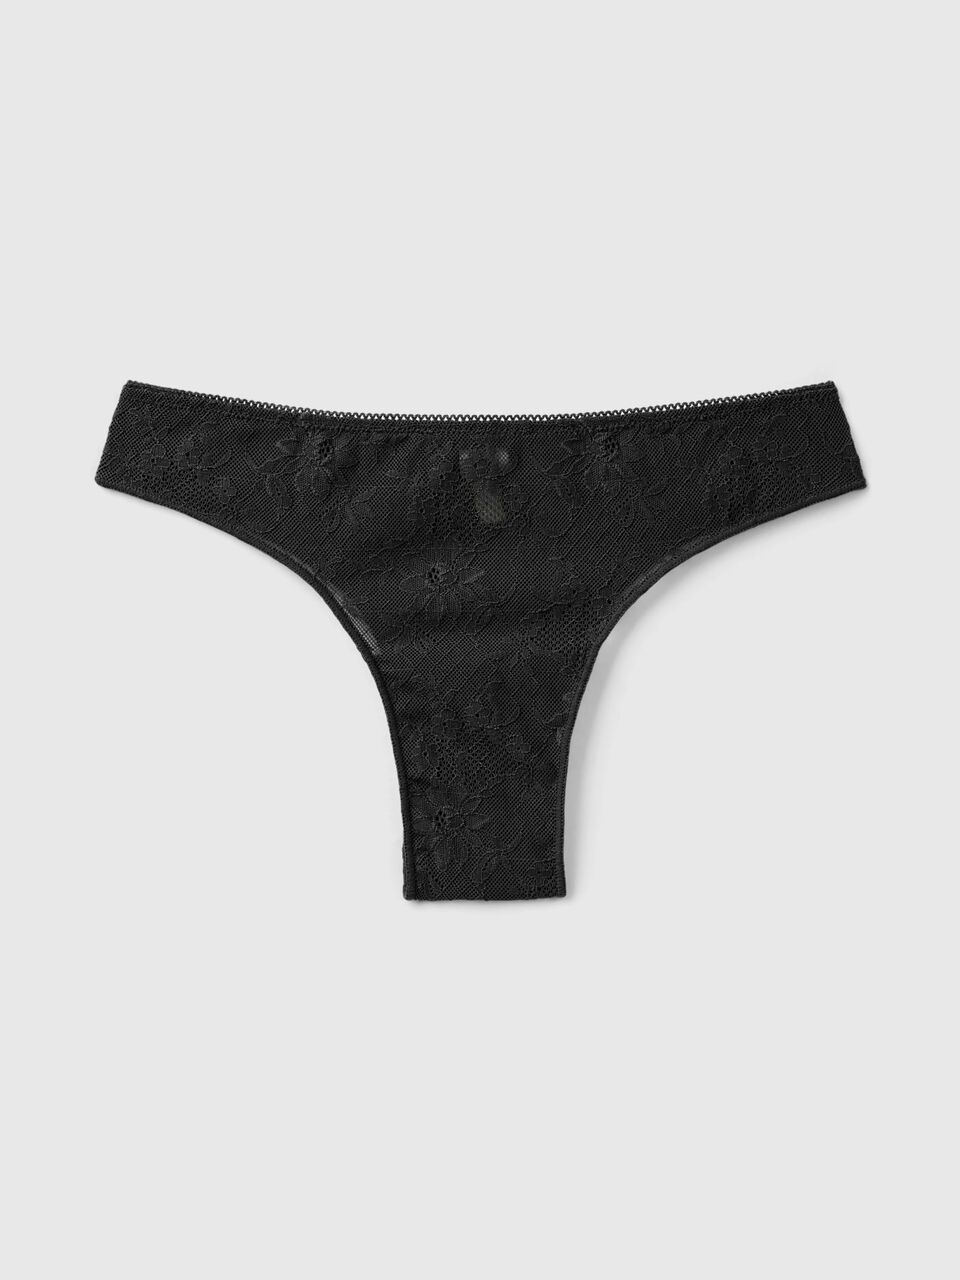 Brazilian underwear in microfiber lace - Black